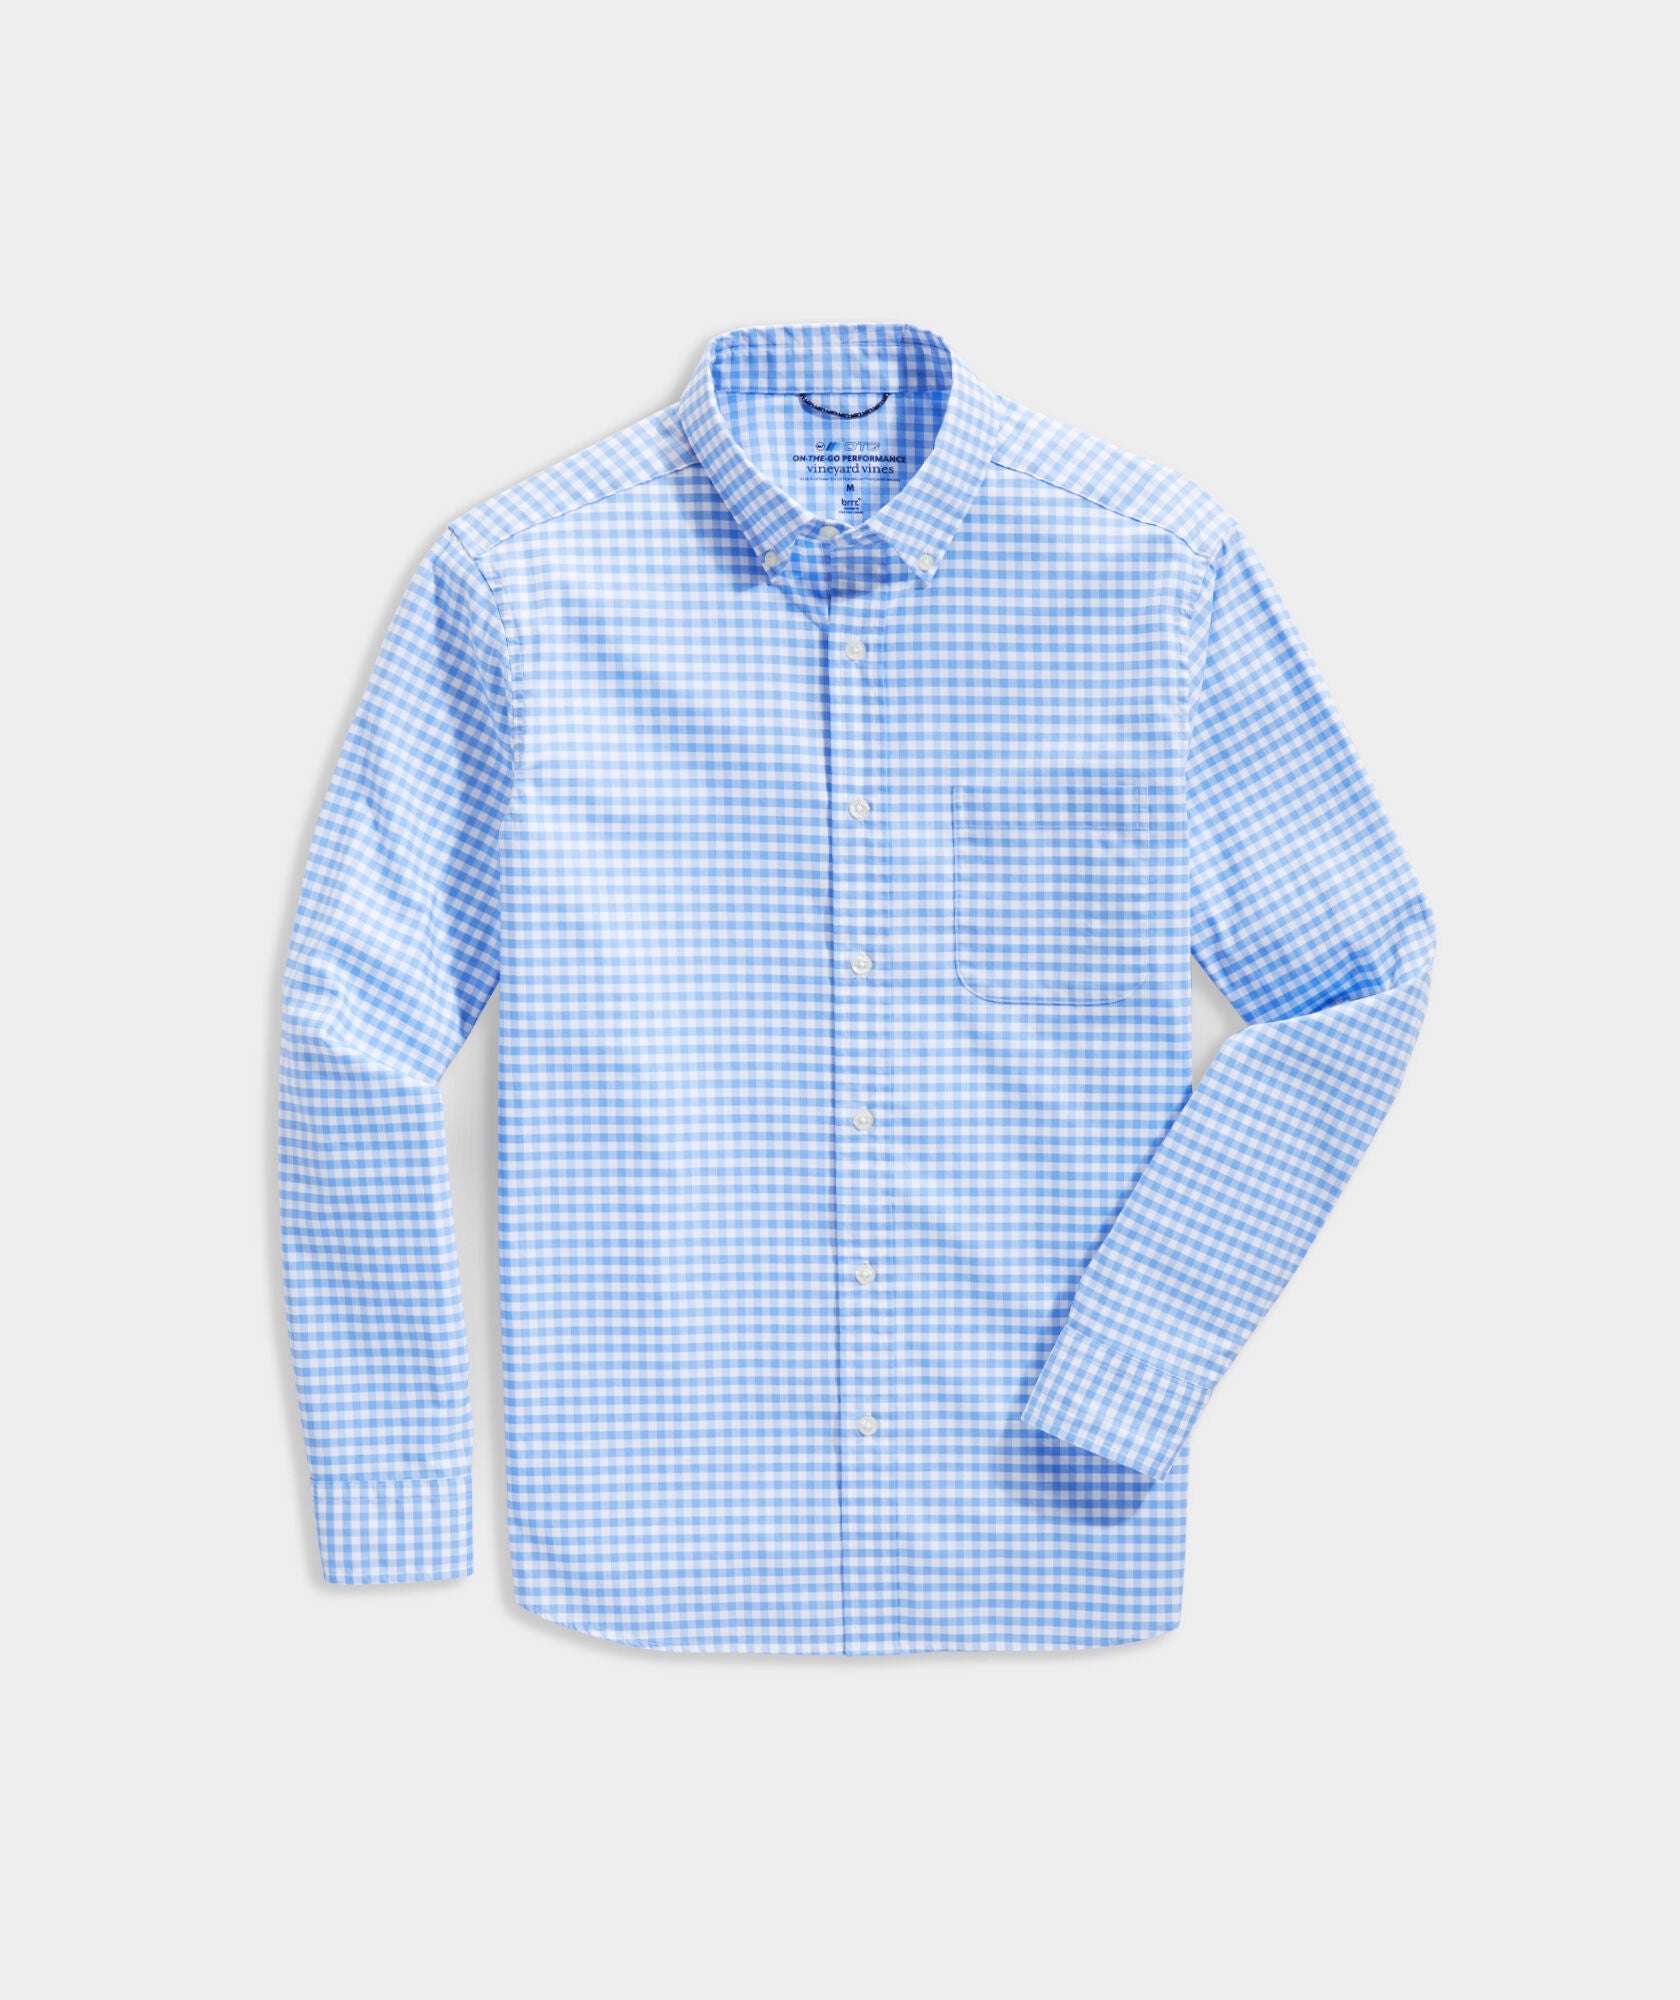 Vineyard Vines Gingham OTG Brrr Shirt - Newport Blue